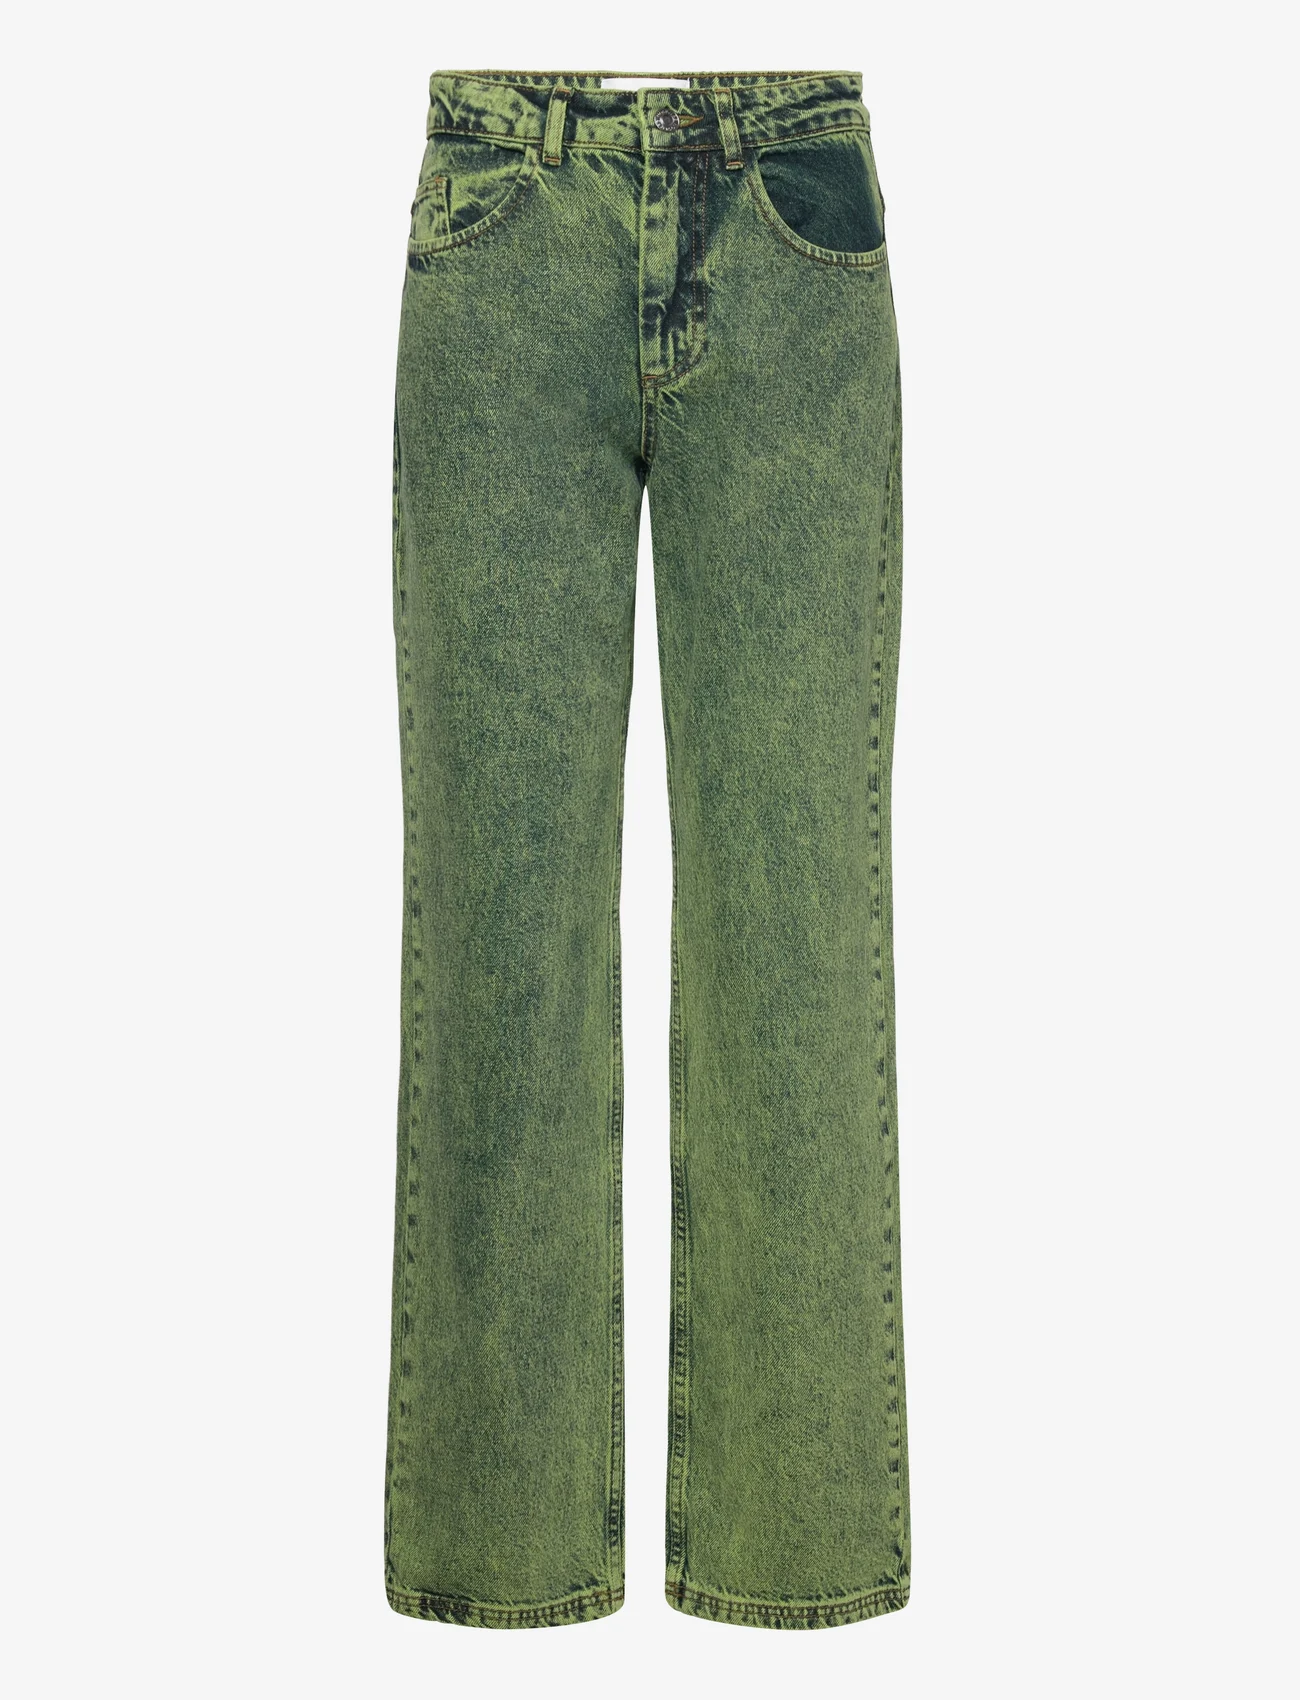 Hosbjerg - Leah Acid Denim Pants - jeans met wijde pijpen - lime green - 0